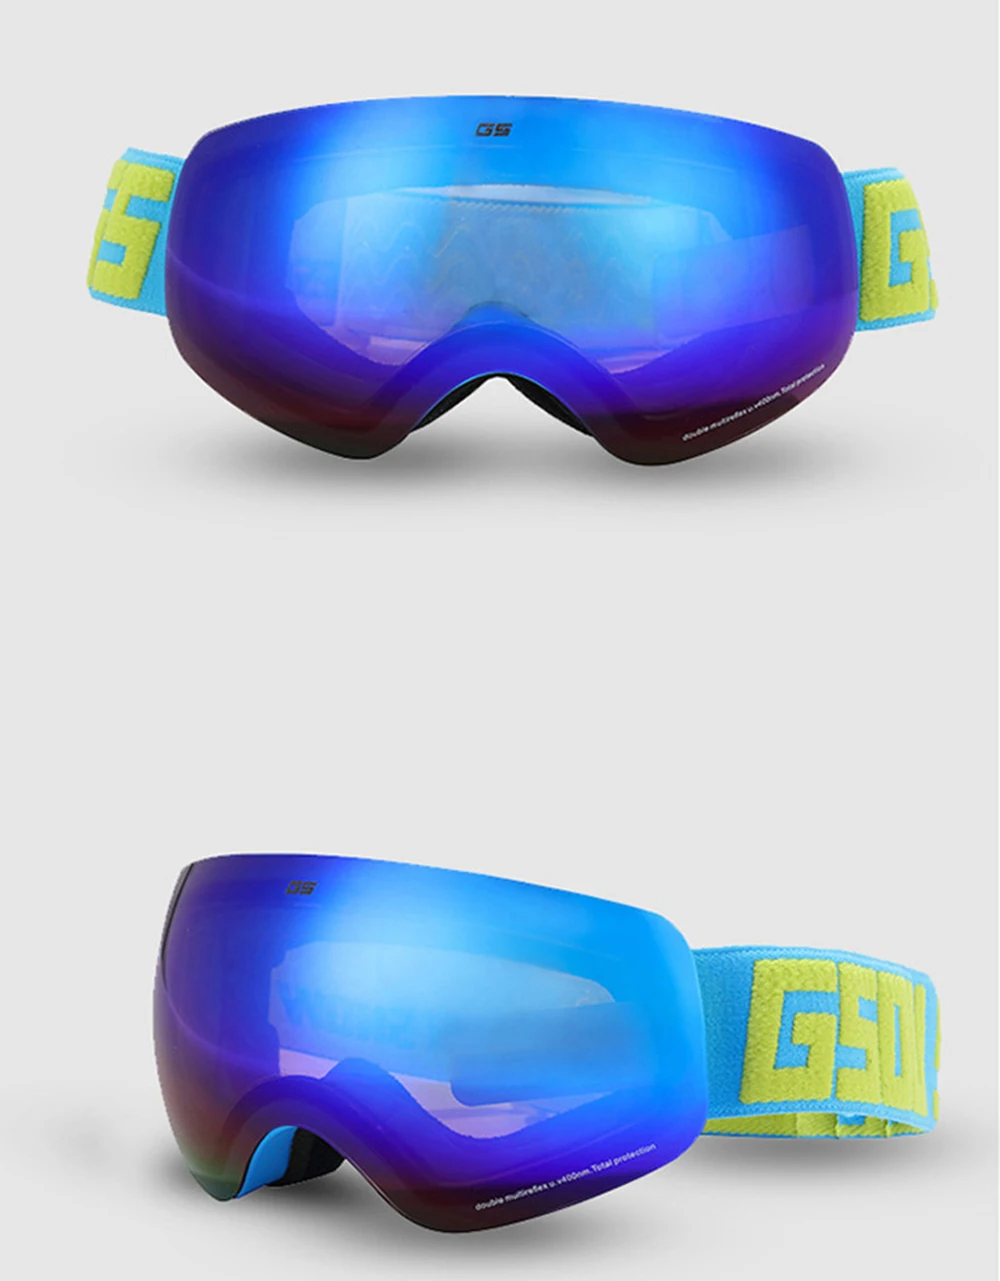 Gsou зимние детские лыжные очки на открытом воздухе мульти-цветные очки Профессиональный сноуборд очки Защита для мальчиков Спортивная одежда для катания на лыжах Солнцезащитные очки